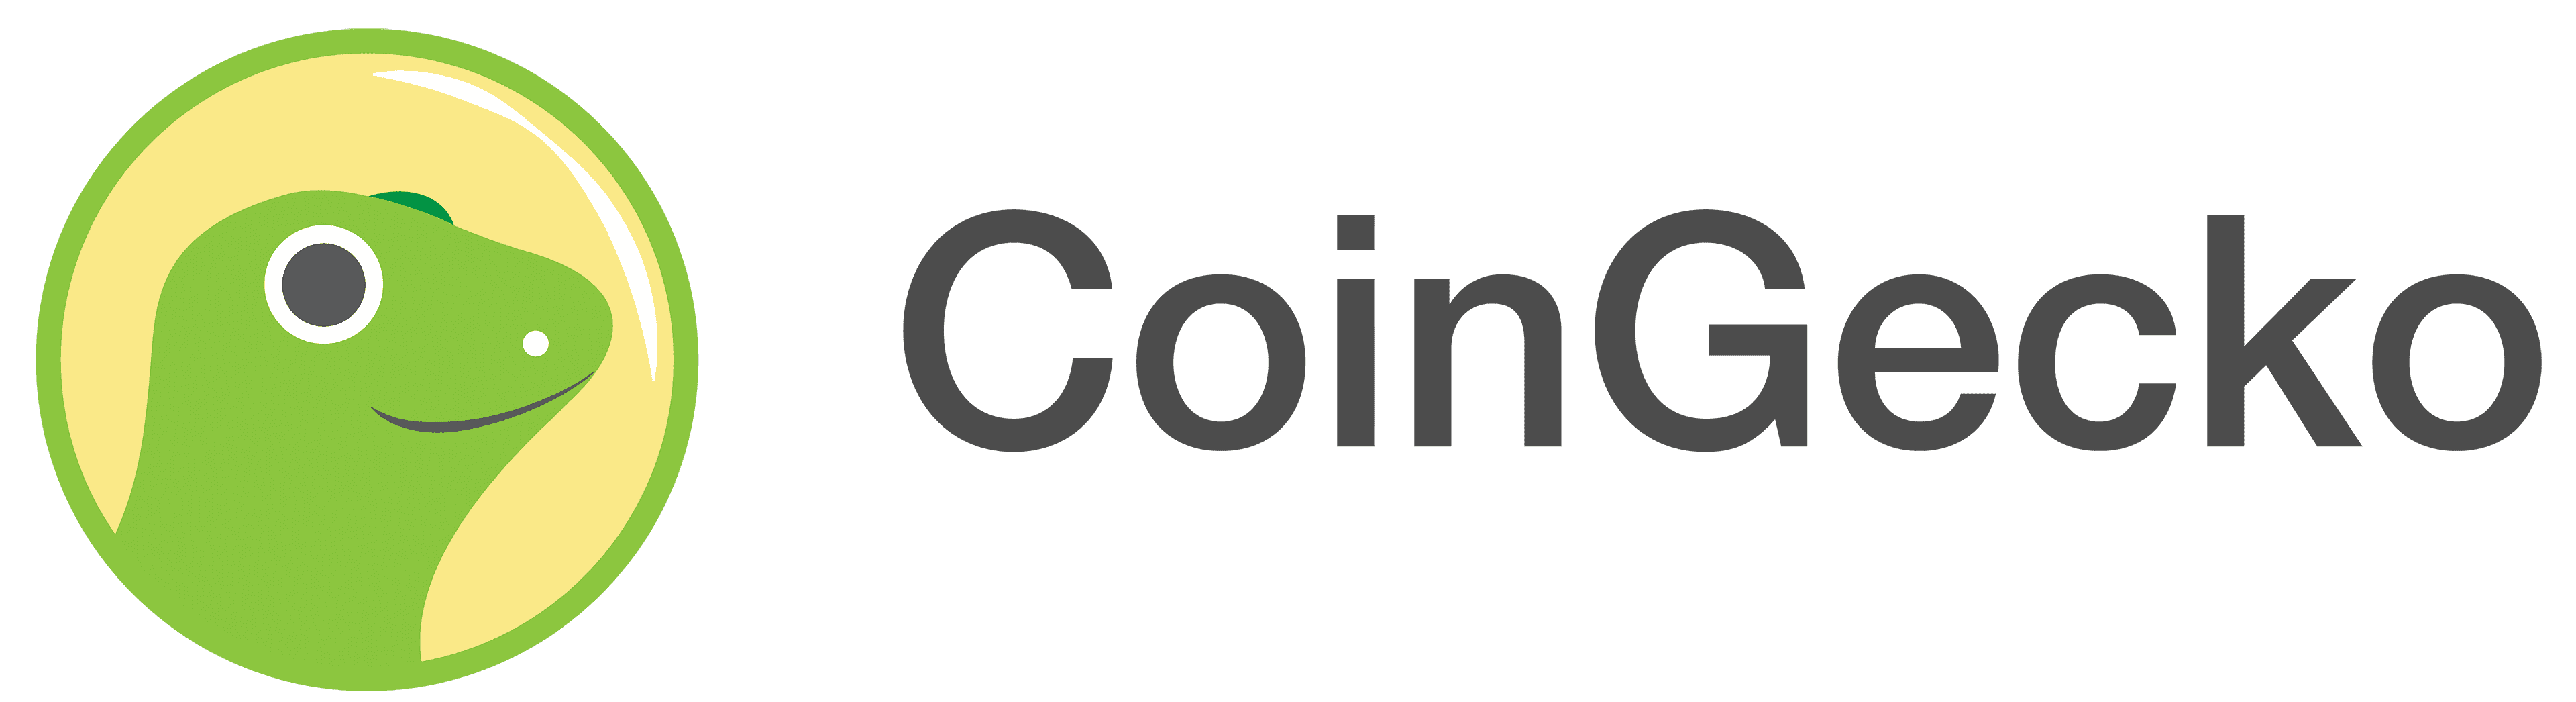 CoinGecko-logo